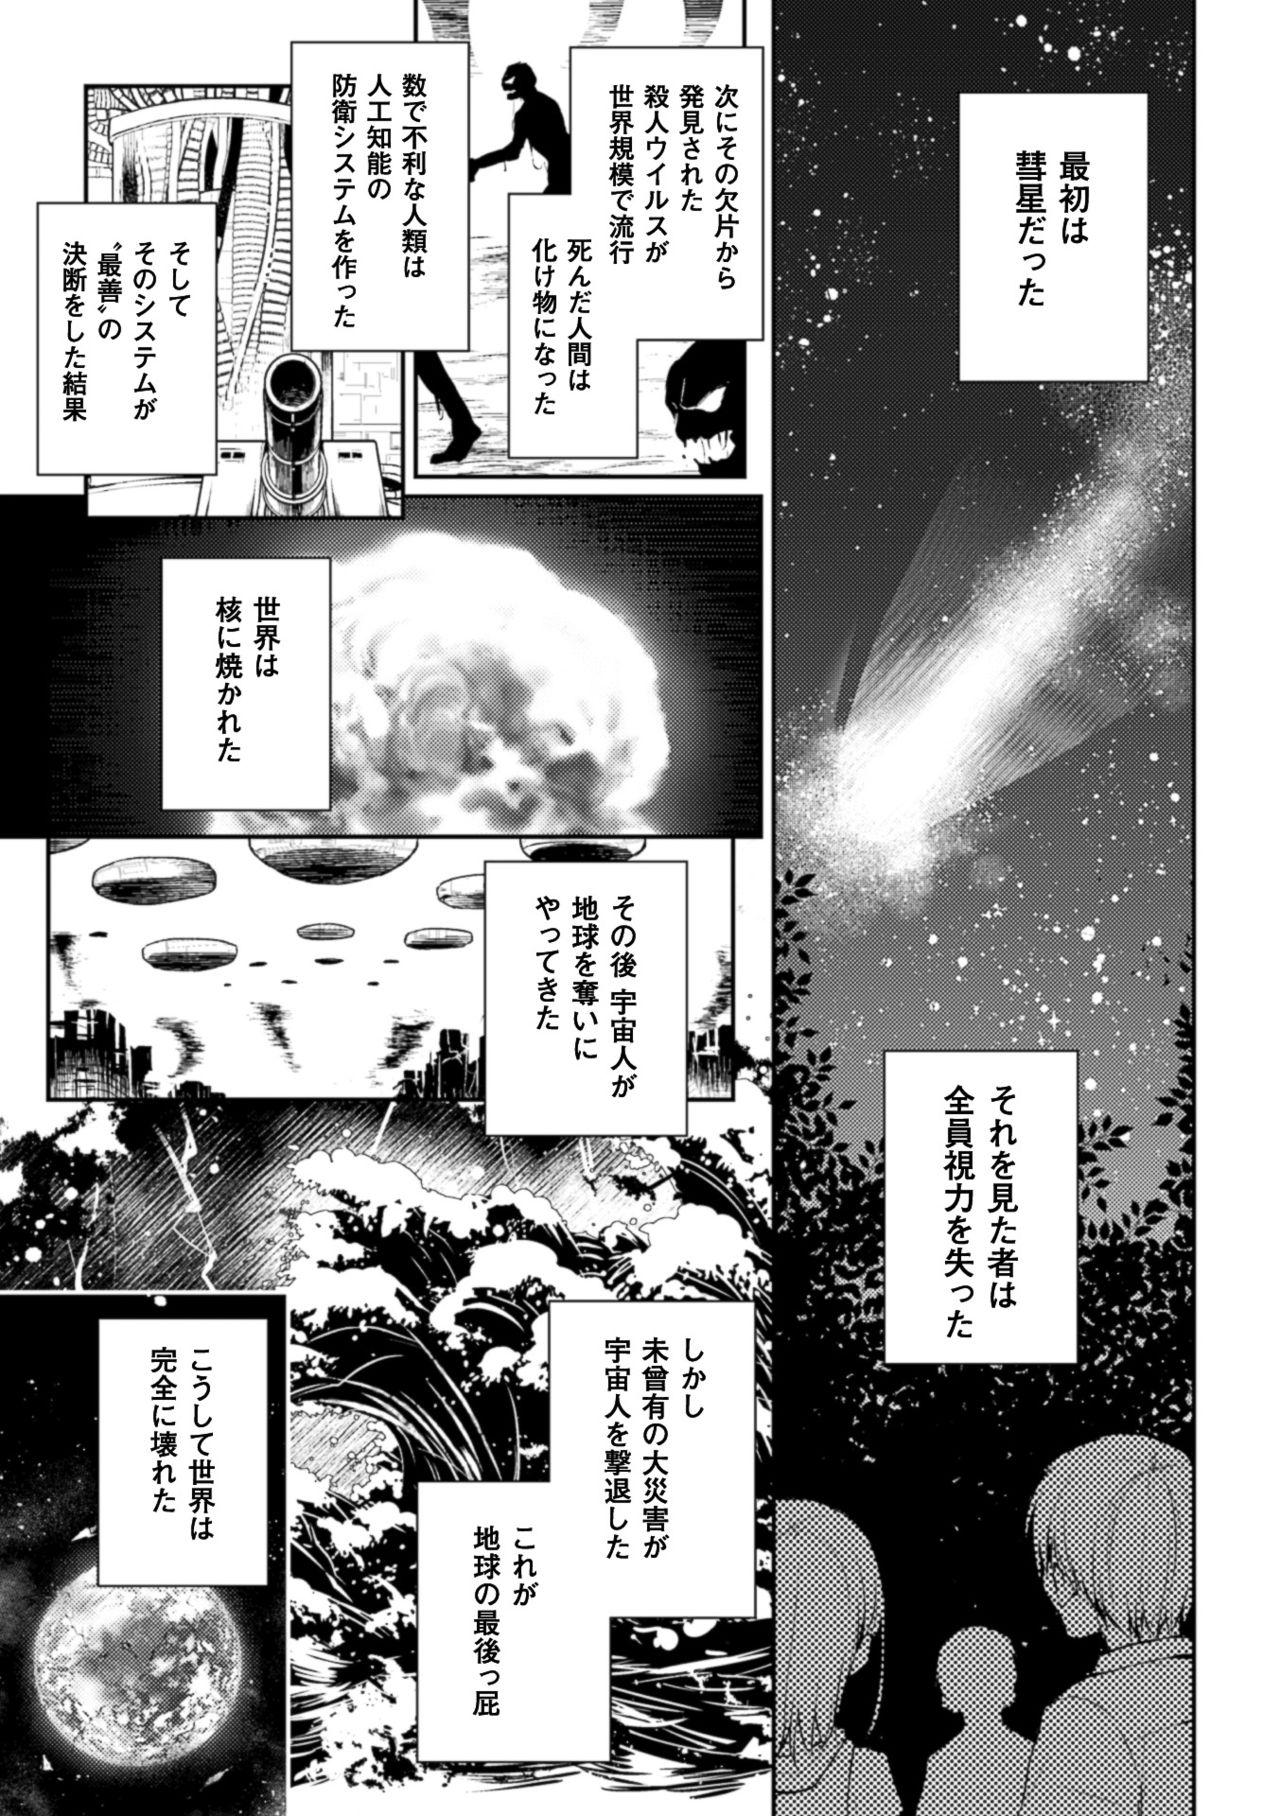 2D Comic Magazine Yuri Ninshin Vol. 3 26